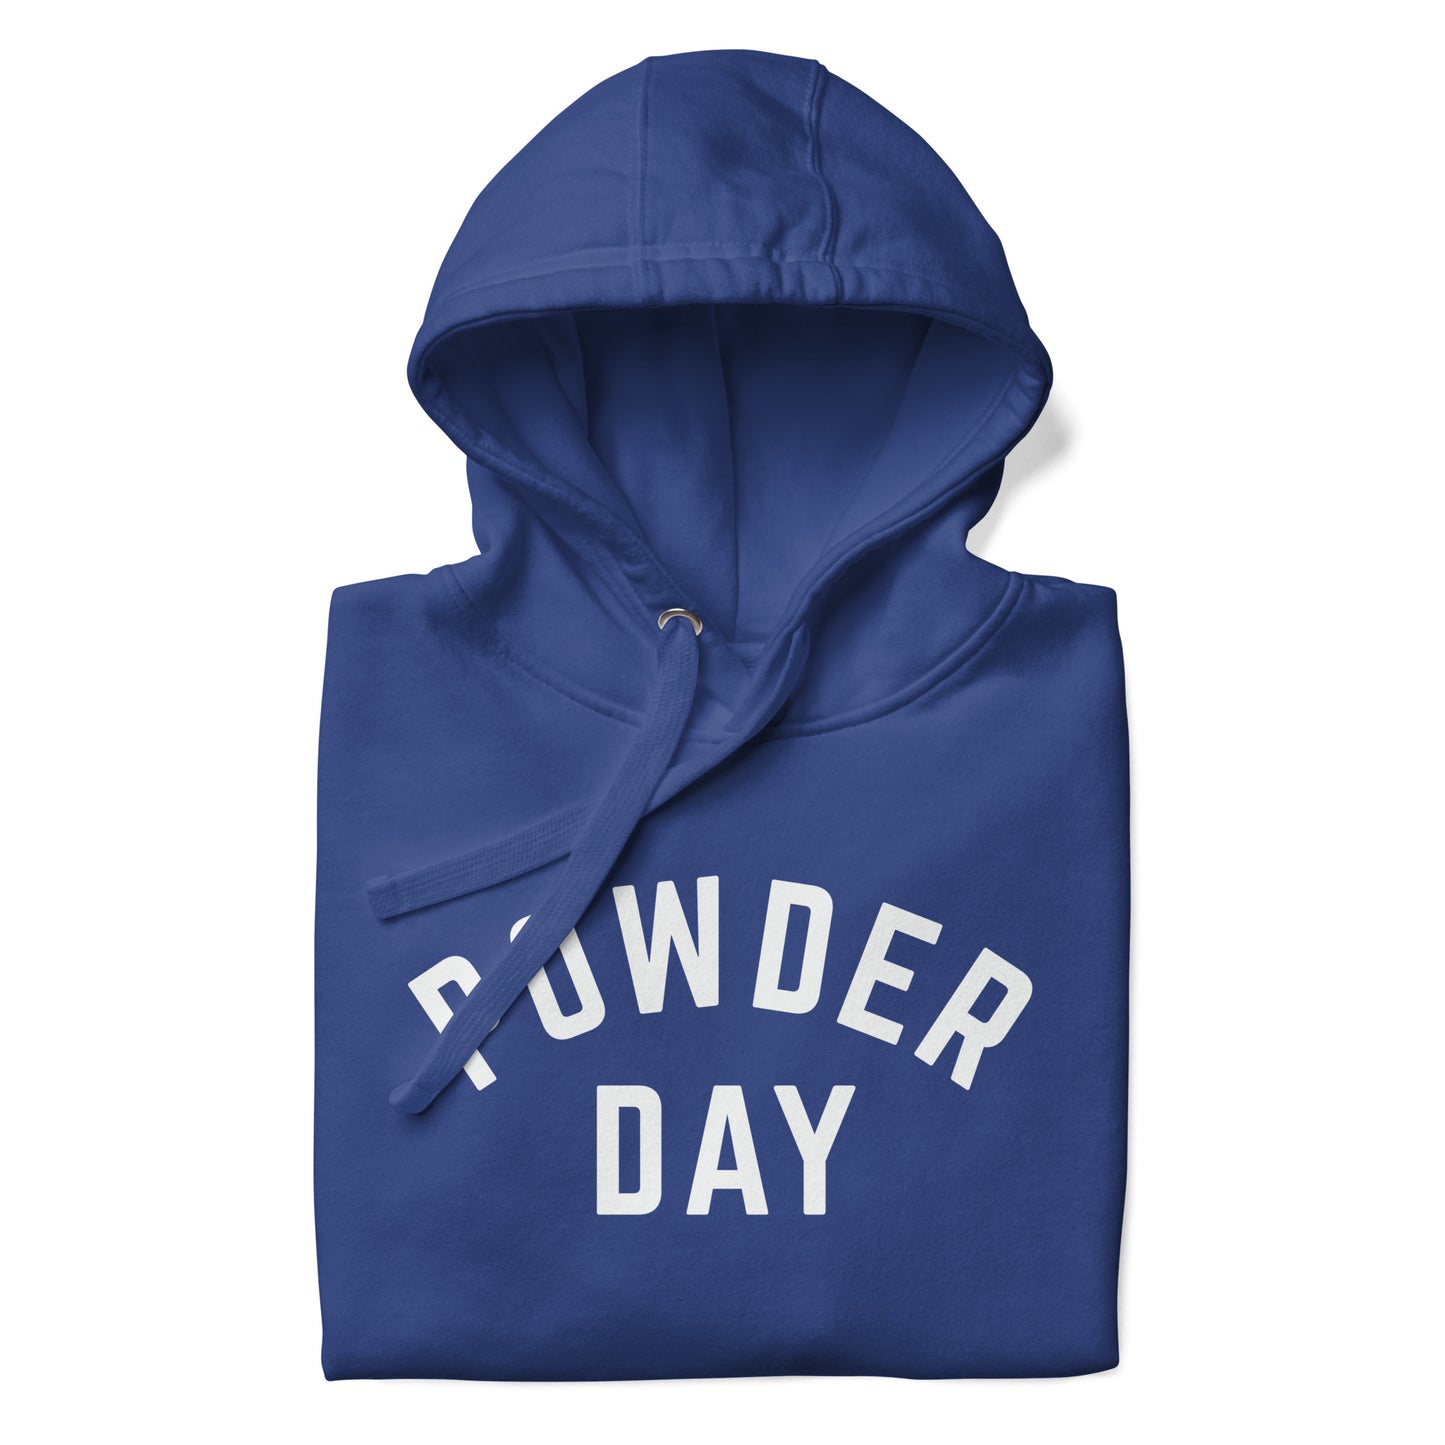 Powder Day - Unisex Hoodie